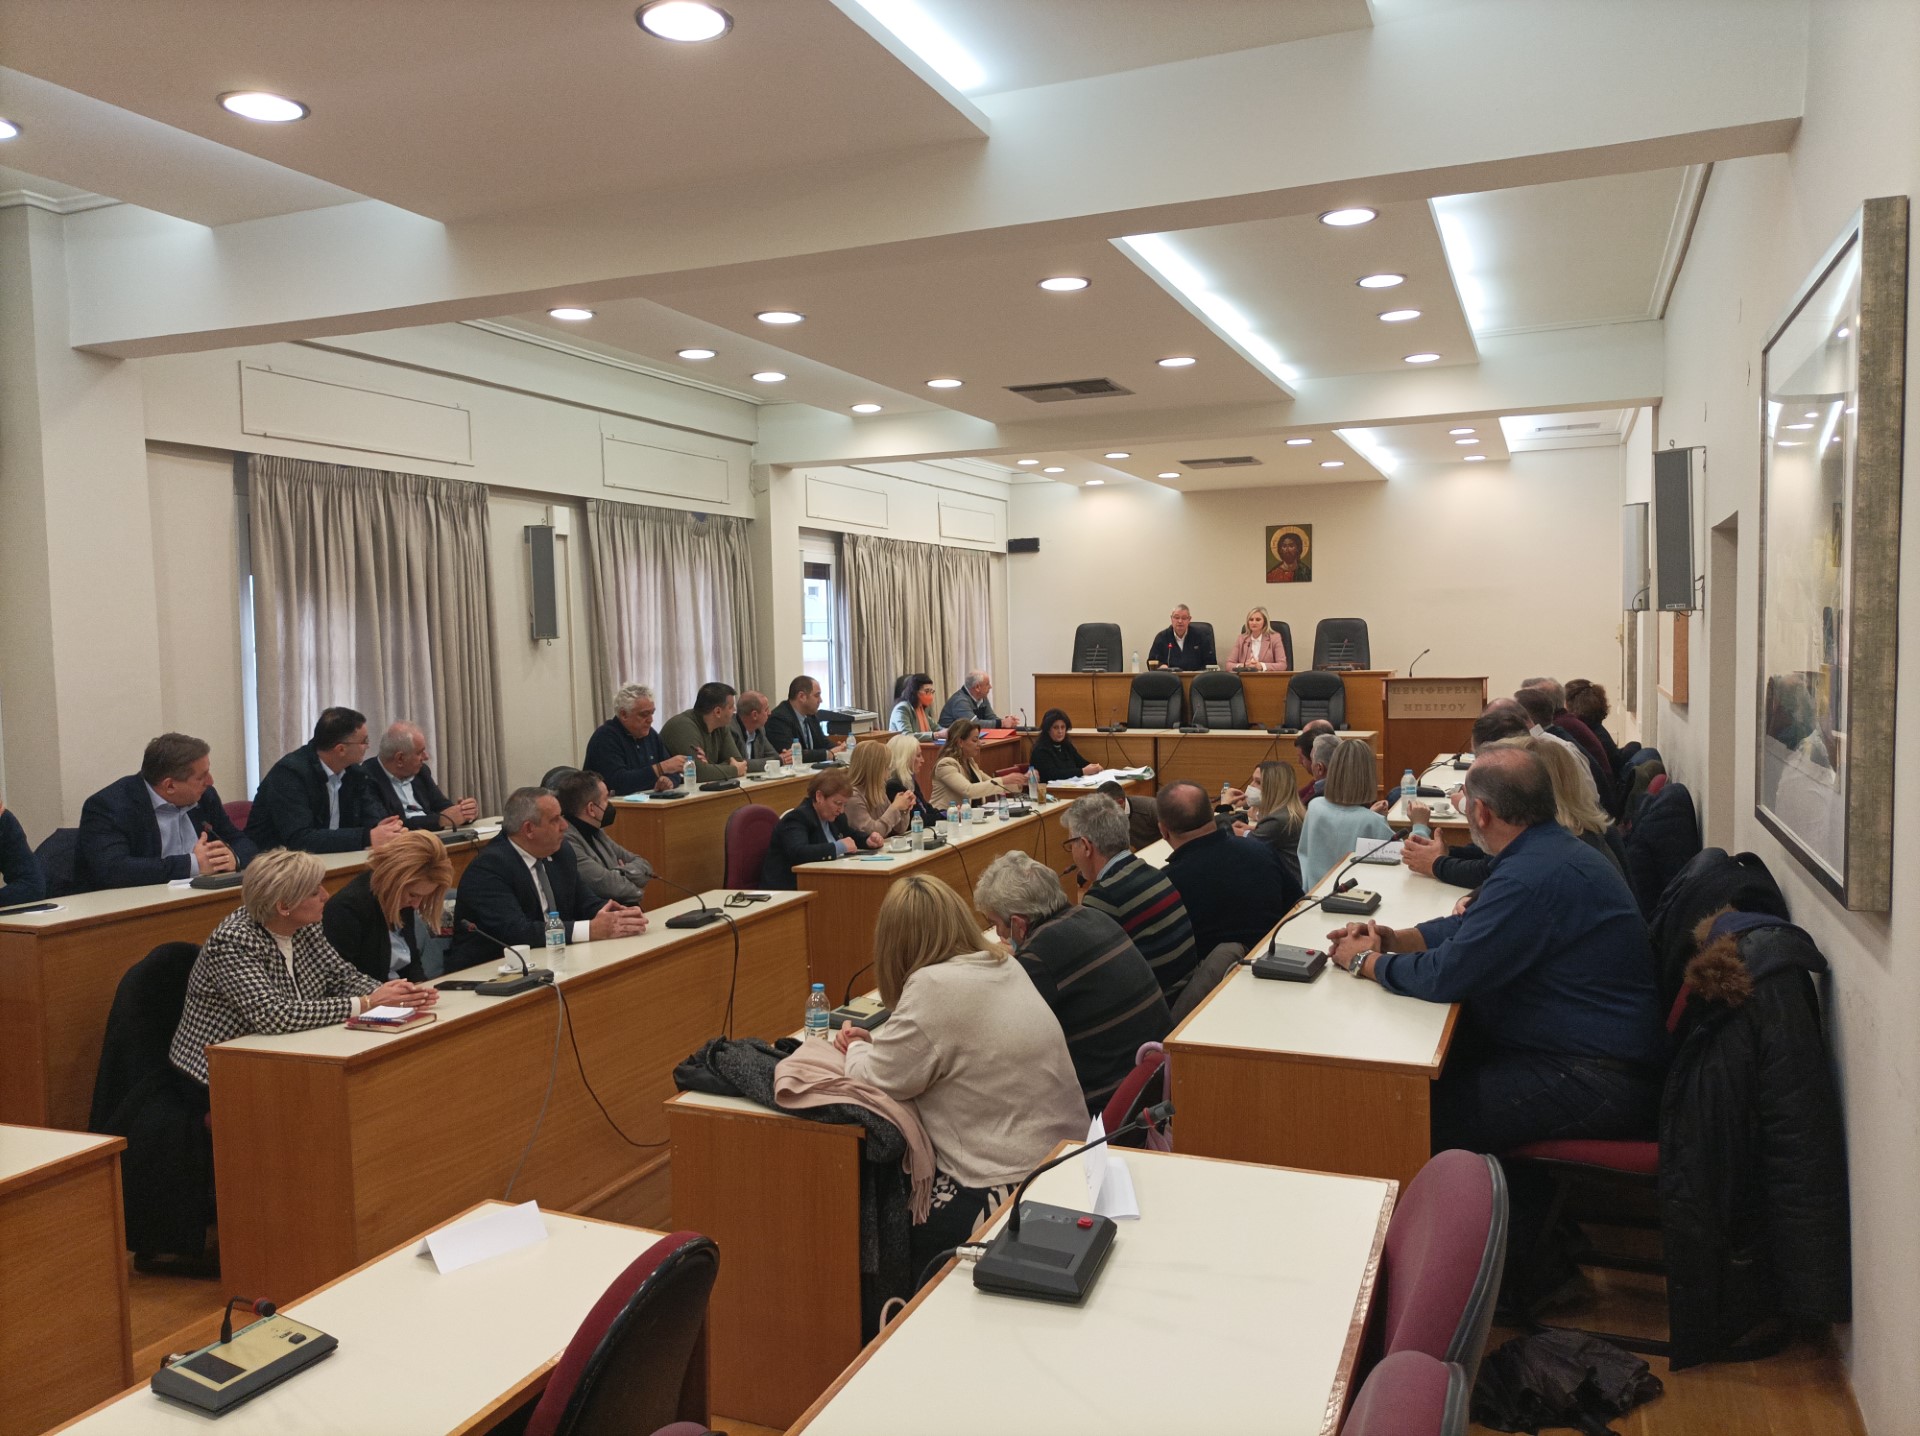 Ιωάννινα: Στη συνεδρίαση του Περιφερειακού Συμβουλίου τα προβλήματα των αγροτών